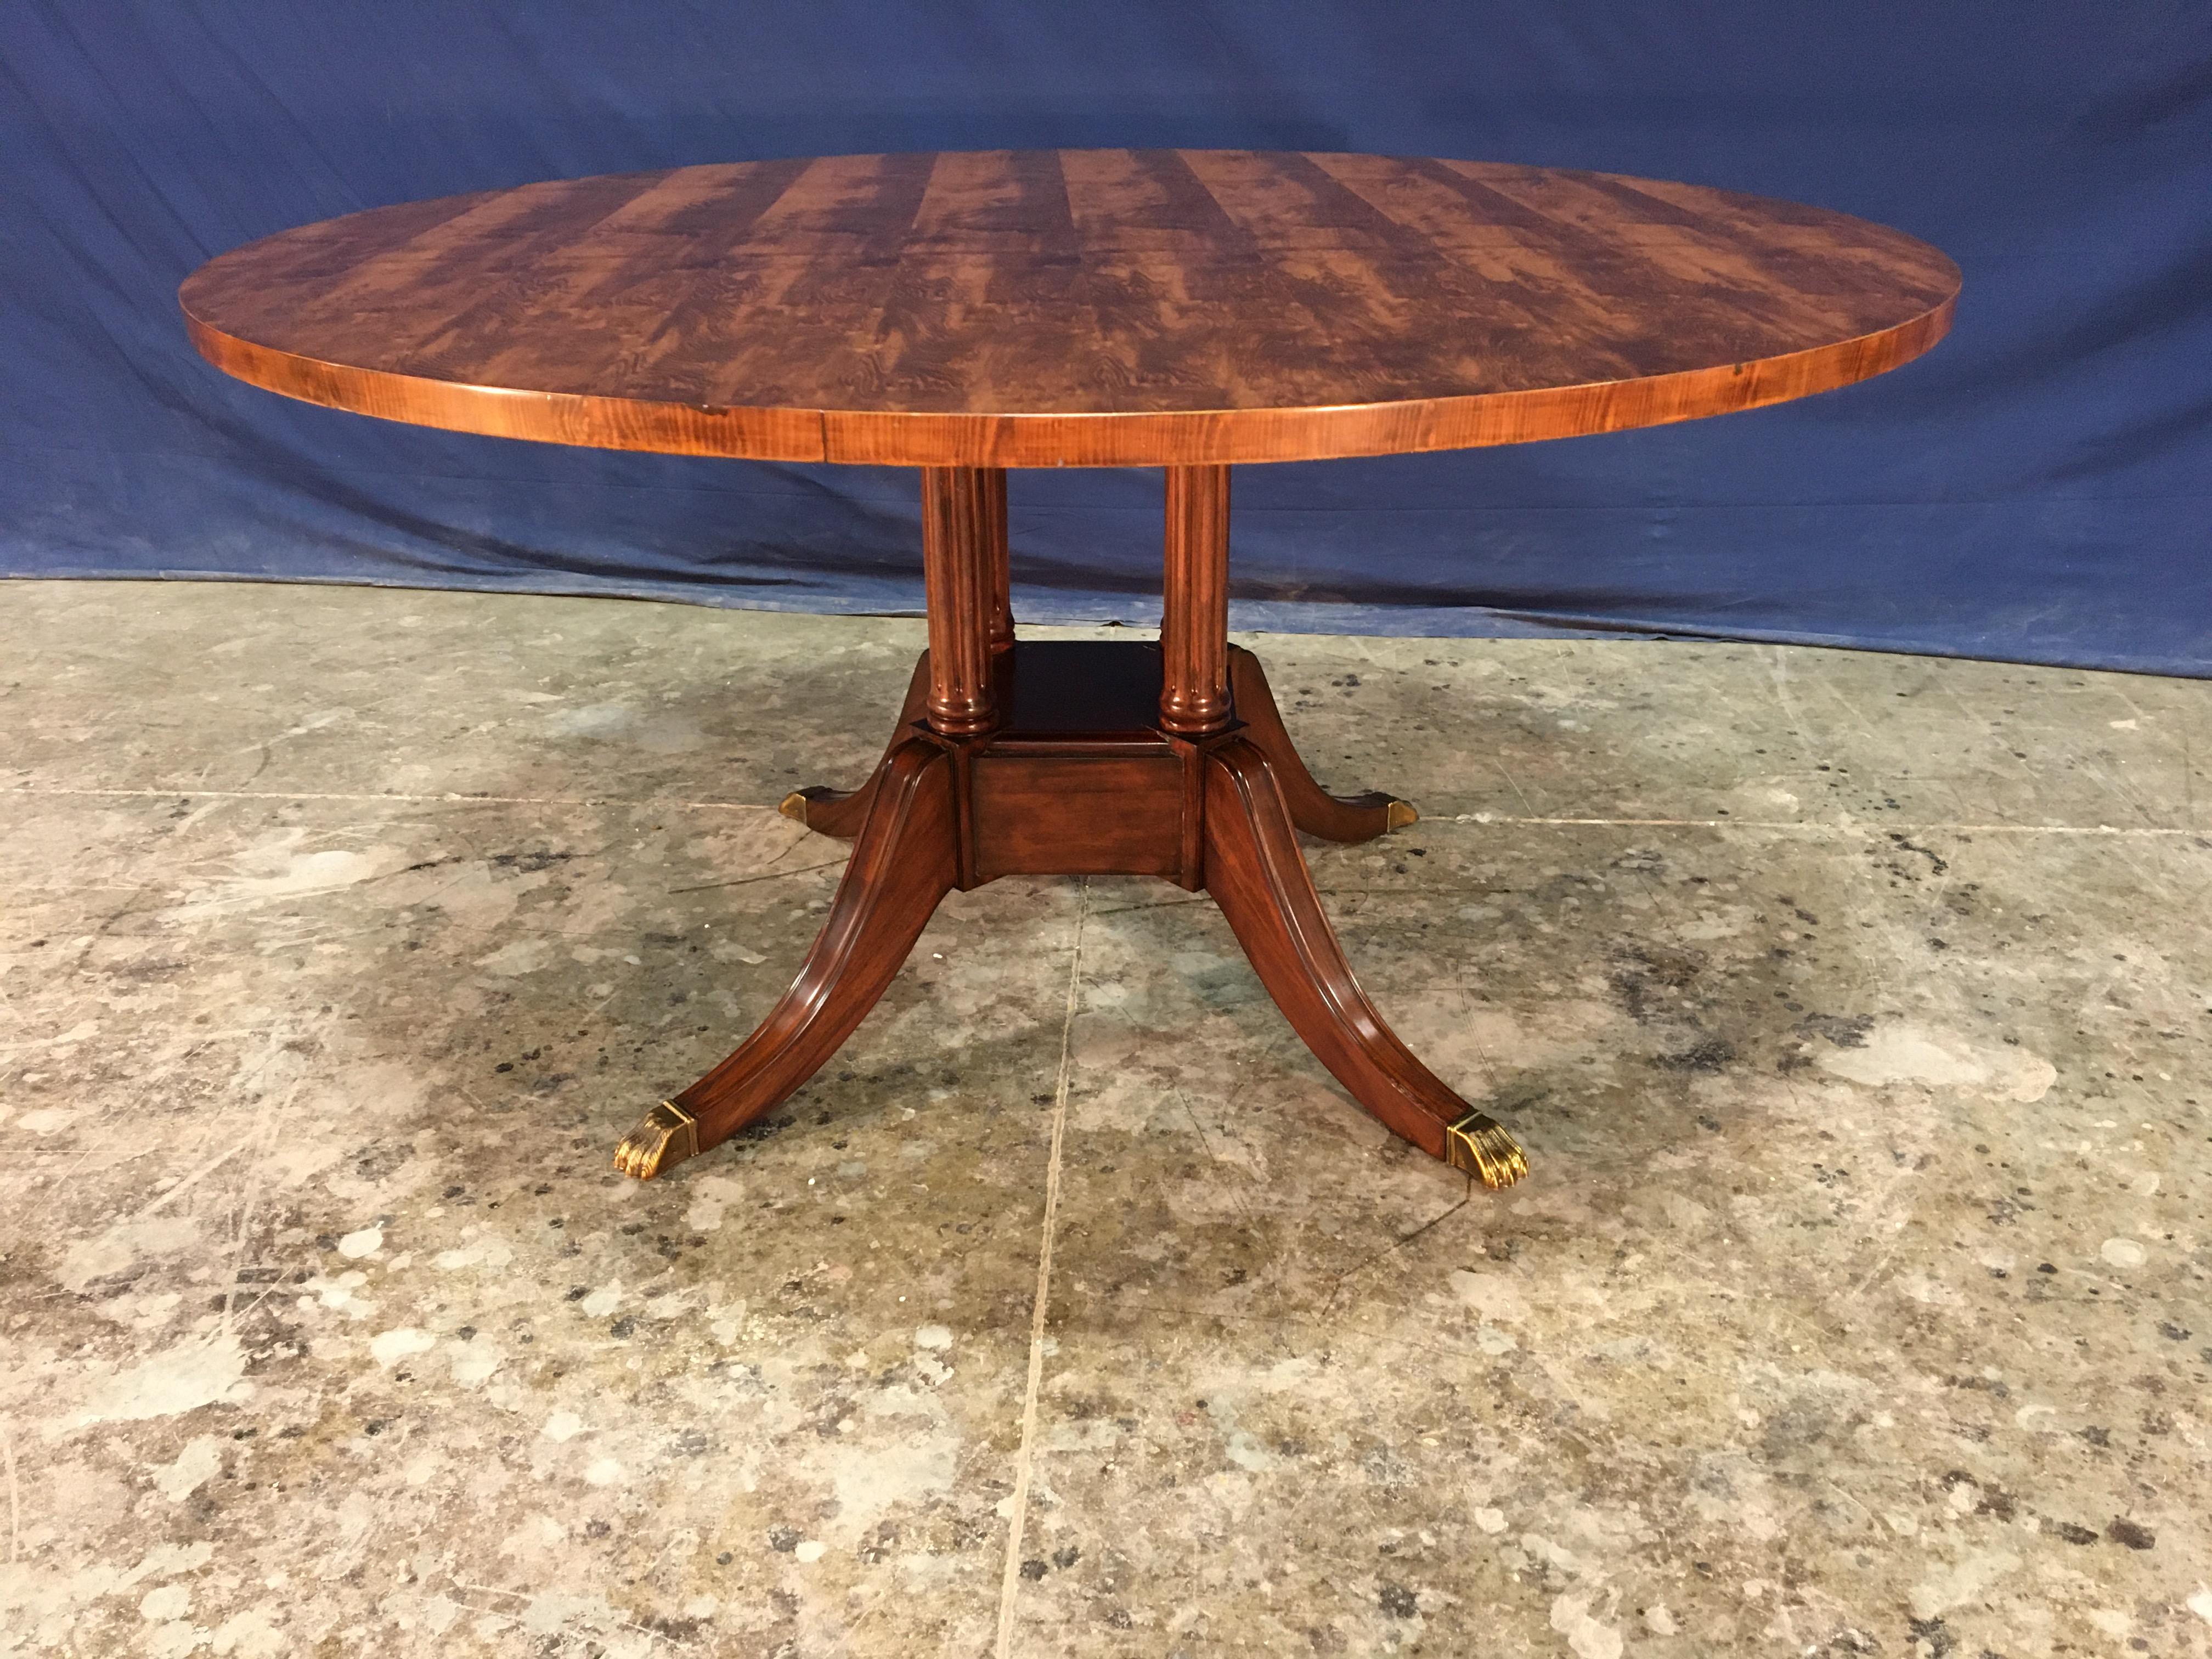 Il s'agit d'une table à manger ronde traditionnelle en bois d'if fabriquée sur commande dans l'atelier de Leighton Hall. Il présente un champ de bois d'if assorti. Le plateau a une finition semi-brillante polie et frottée à la main. Le grand